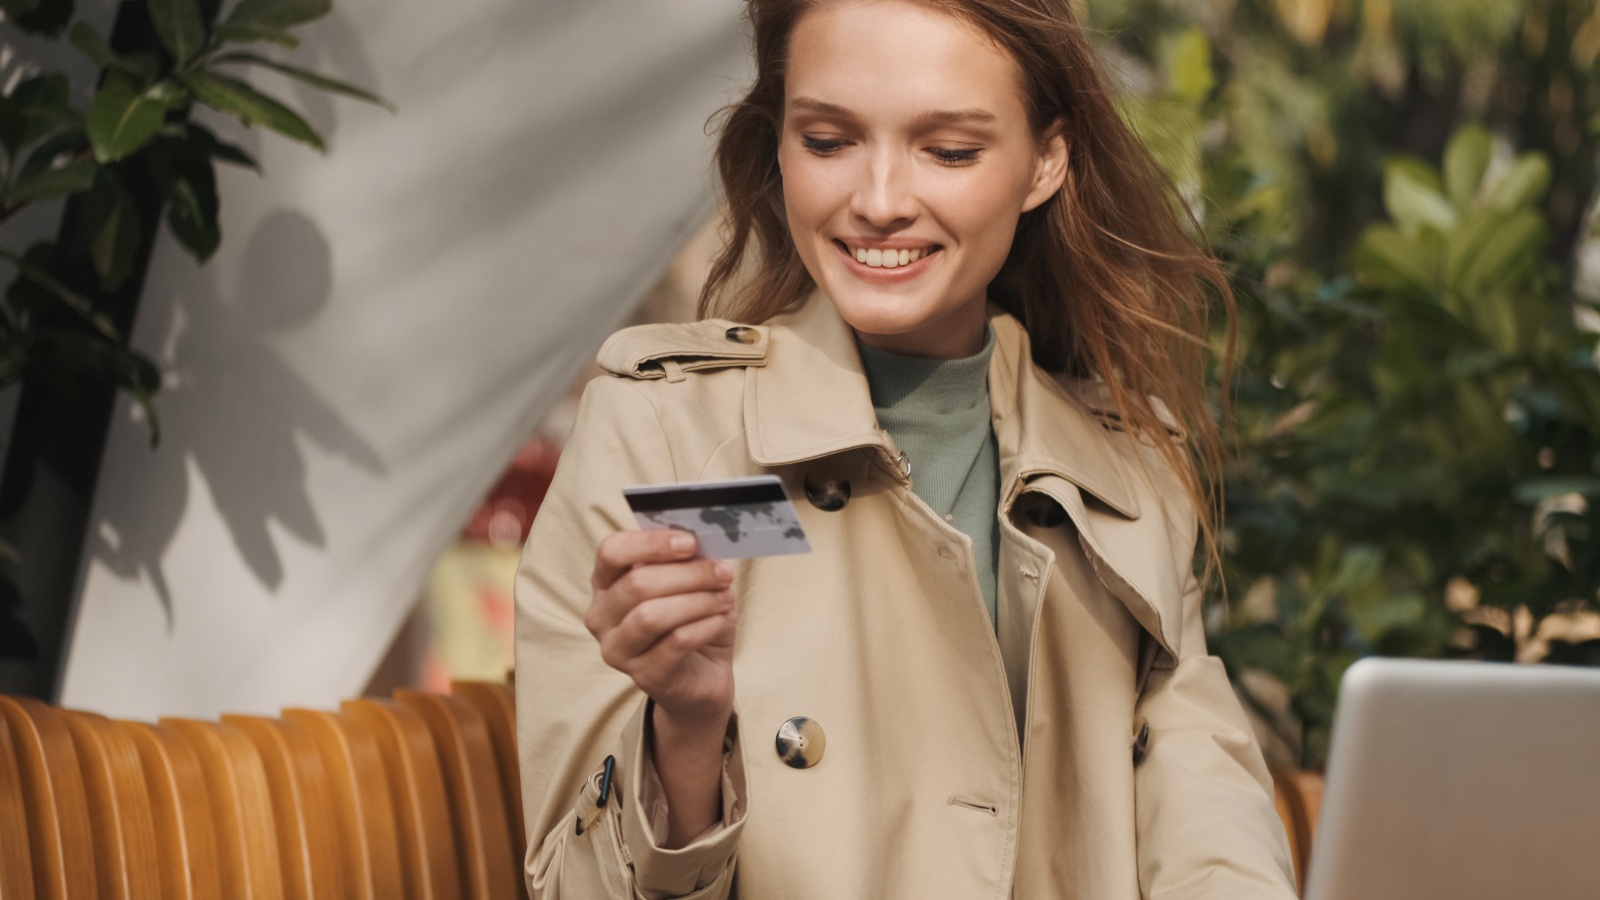 Зображення демонструє жінку з банківською картою для ілюстрації процесу перевірки наявності коштів